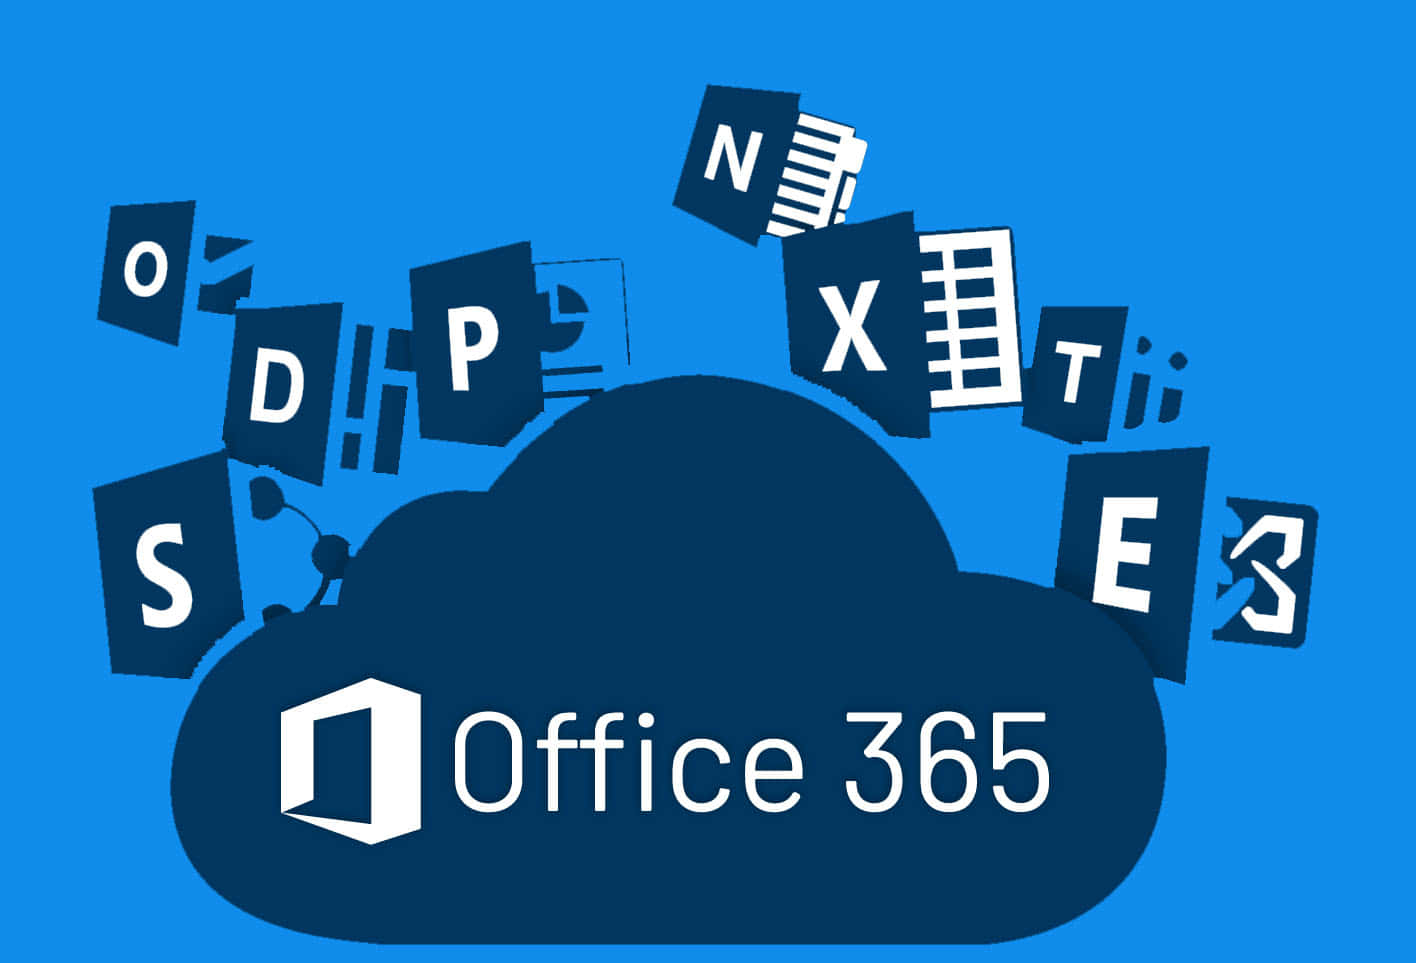 Udnytkraften I Office 365 For Øget Produktivitet.